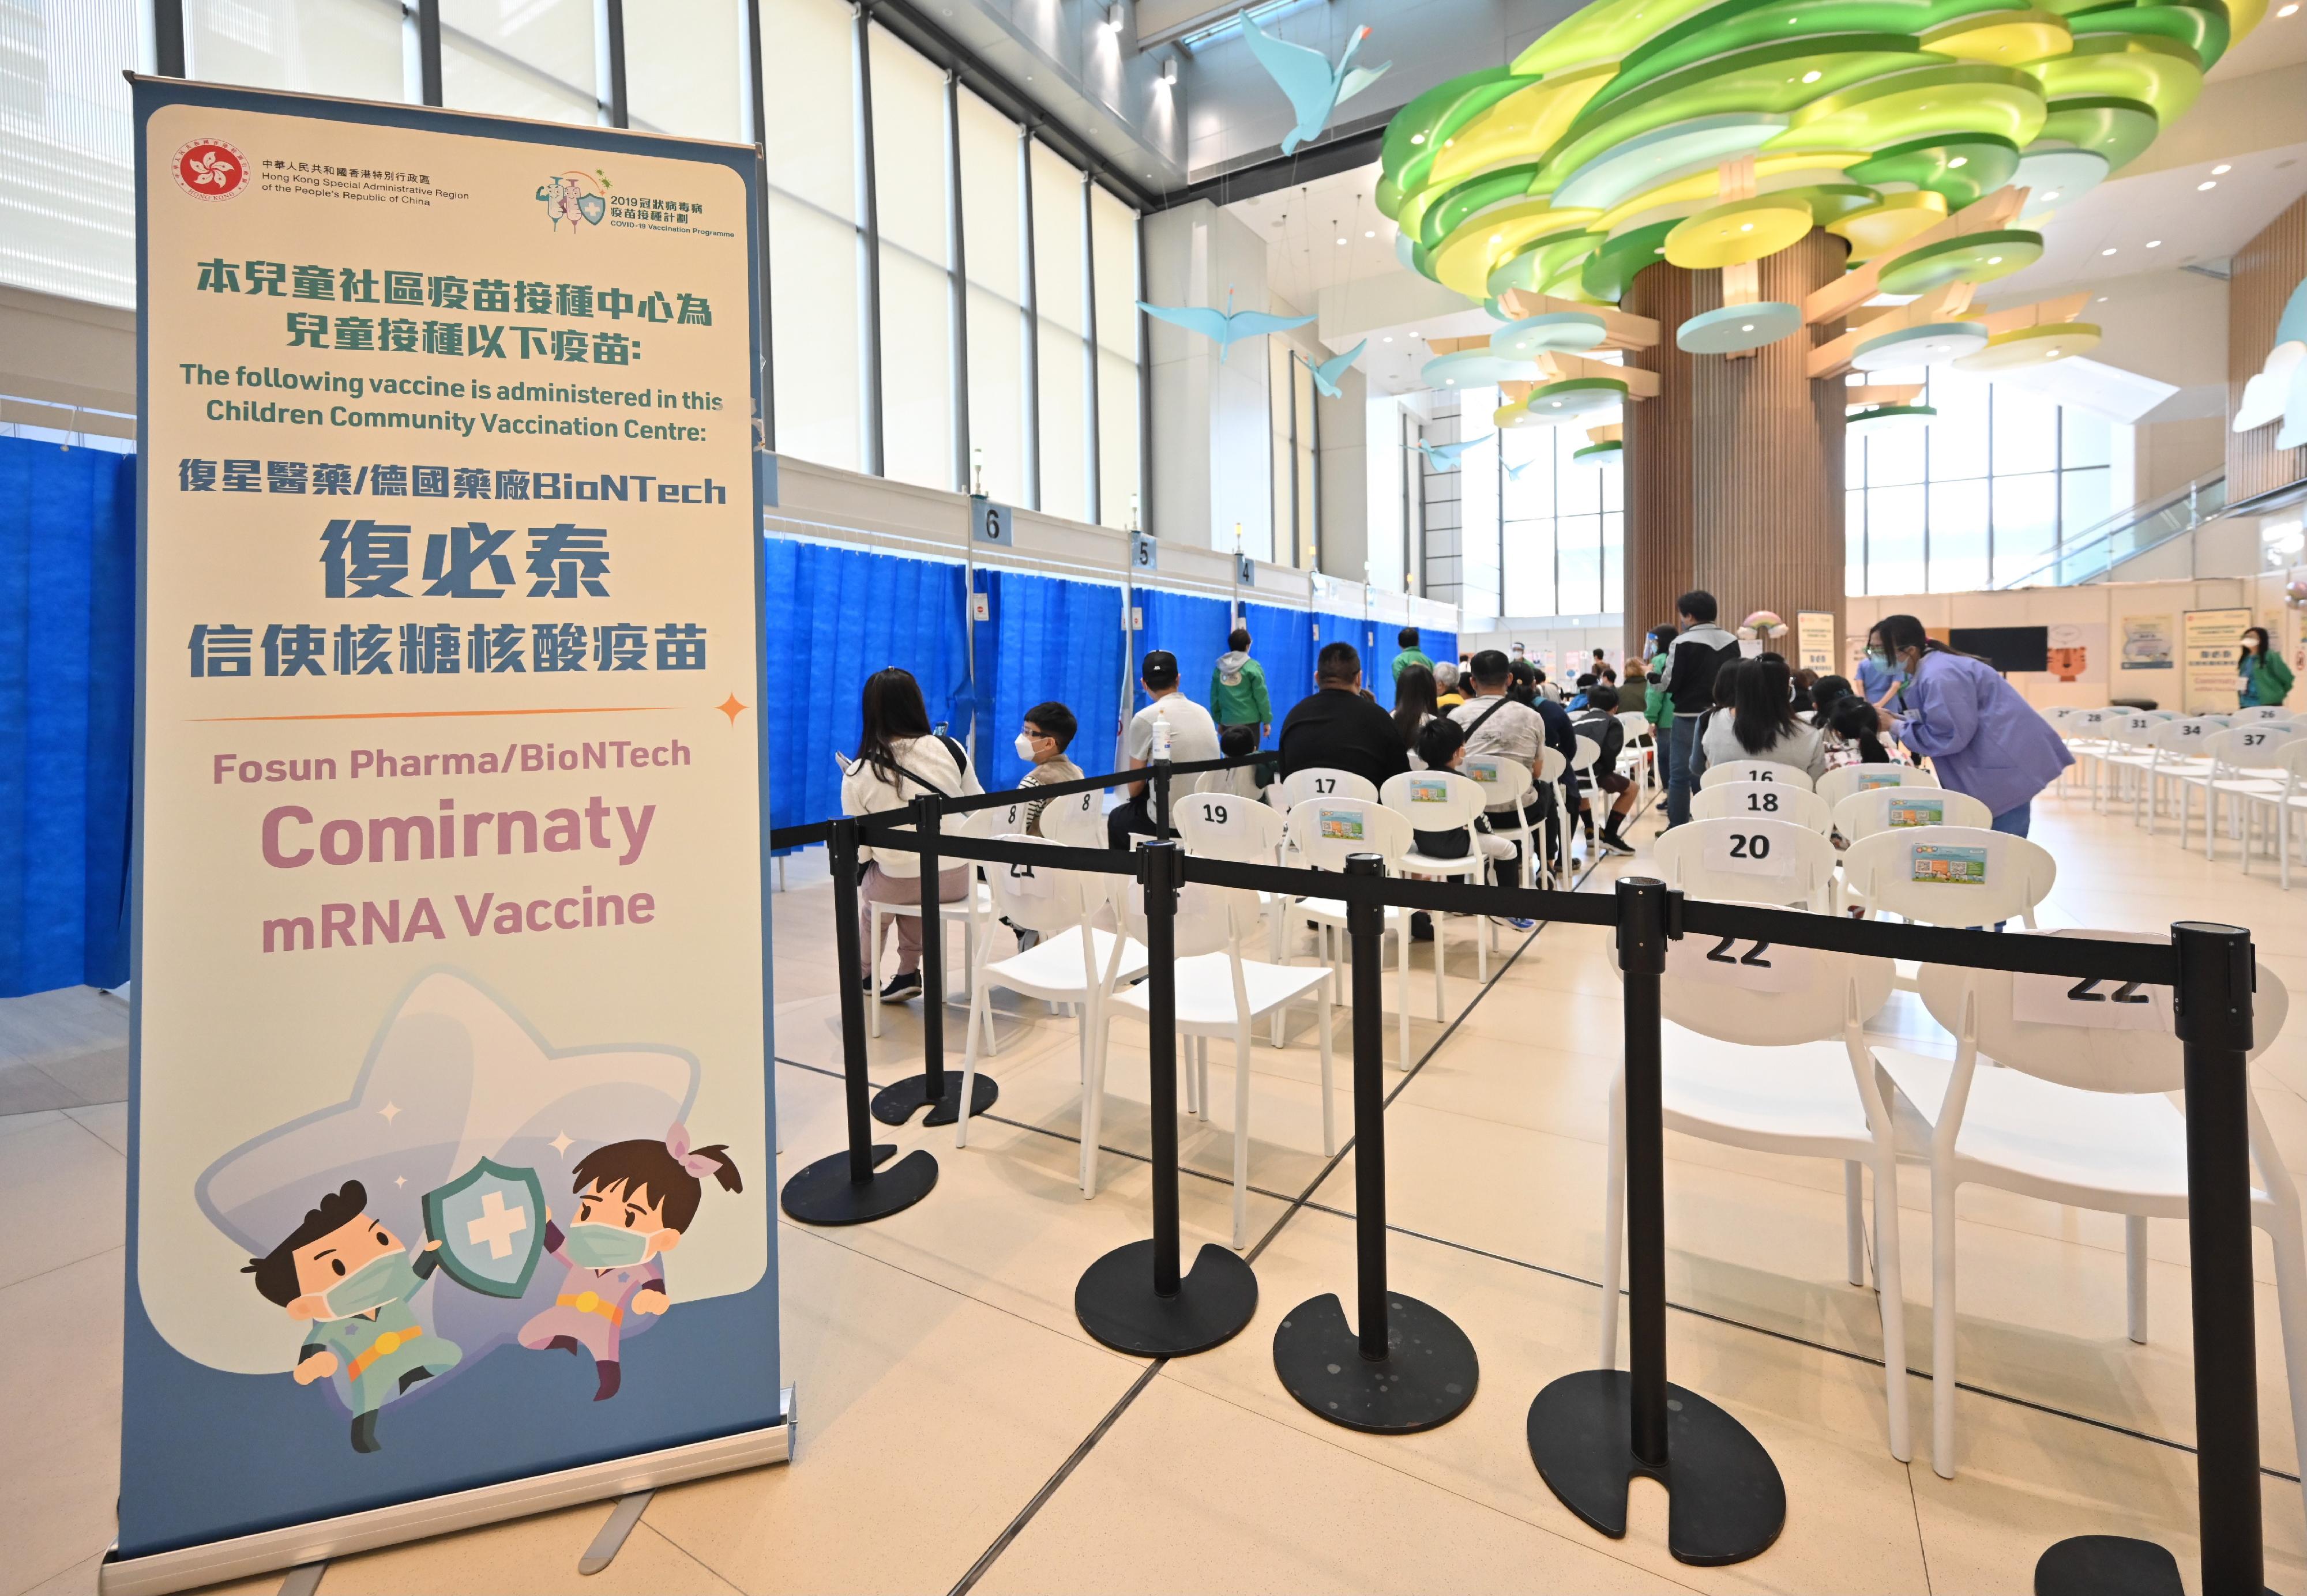 九龍灣香港兒童醫院兒童社區疫苗接種中心專為五歲至十一歲兒童接種復必泰疫苗。圖示該中心的接種等候區。